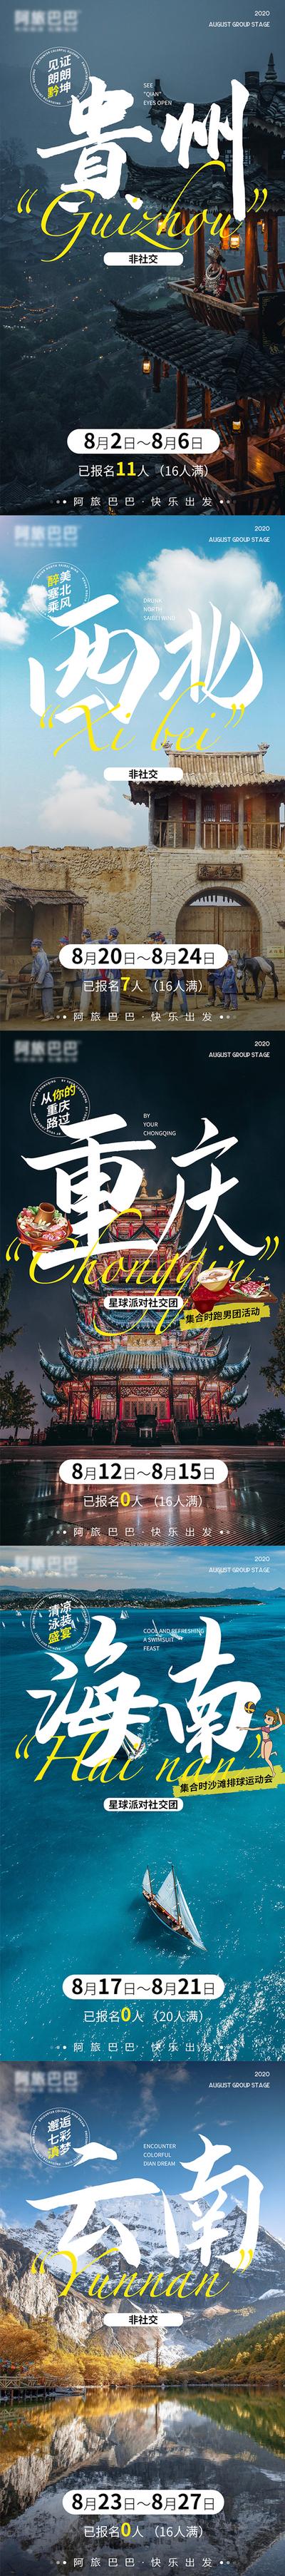 南门网 海报 旅游 云南 贵州 重庆 西北 海南 古建筑 风景 系列